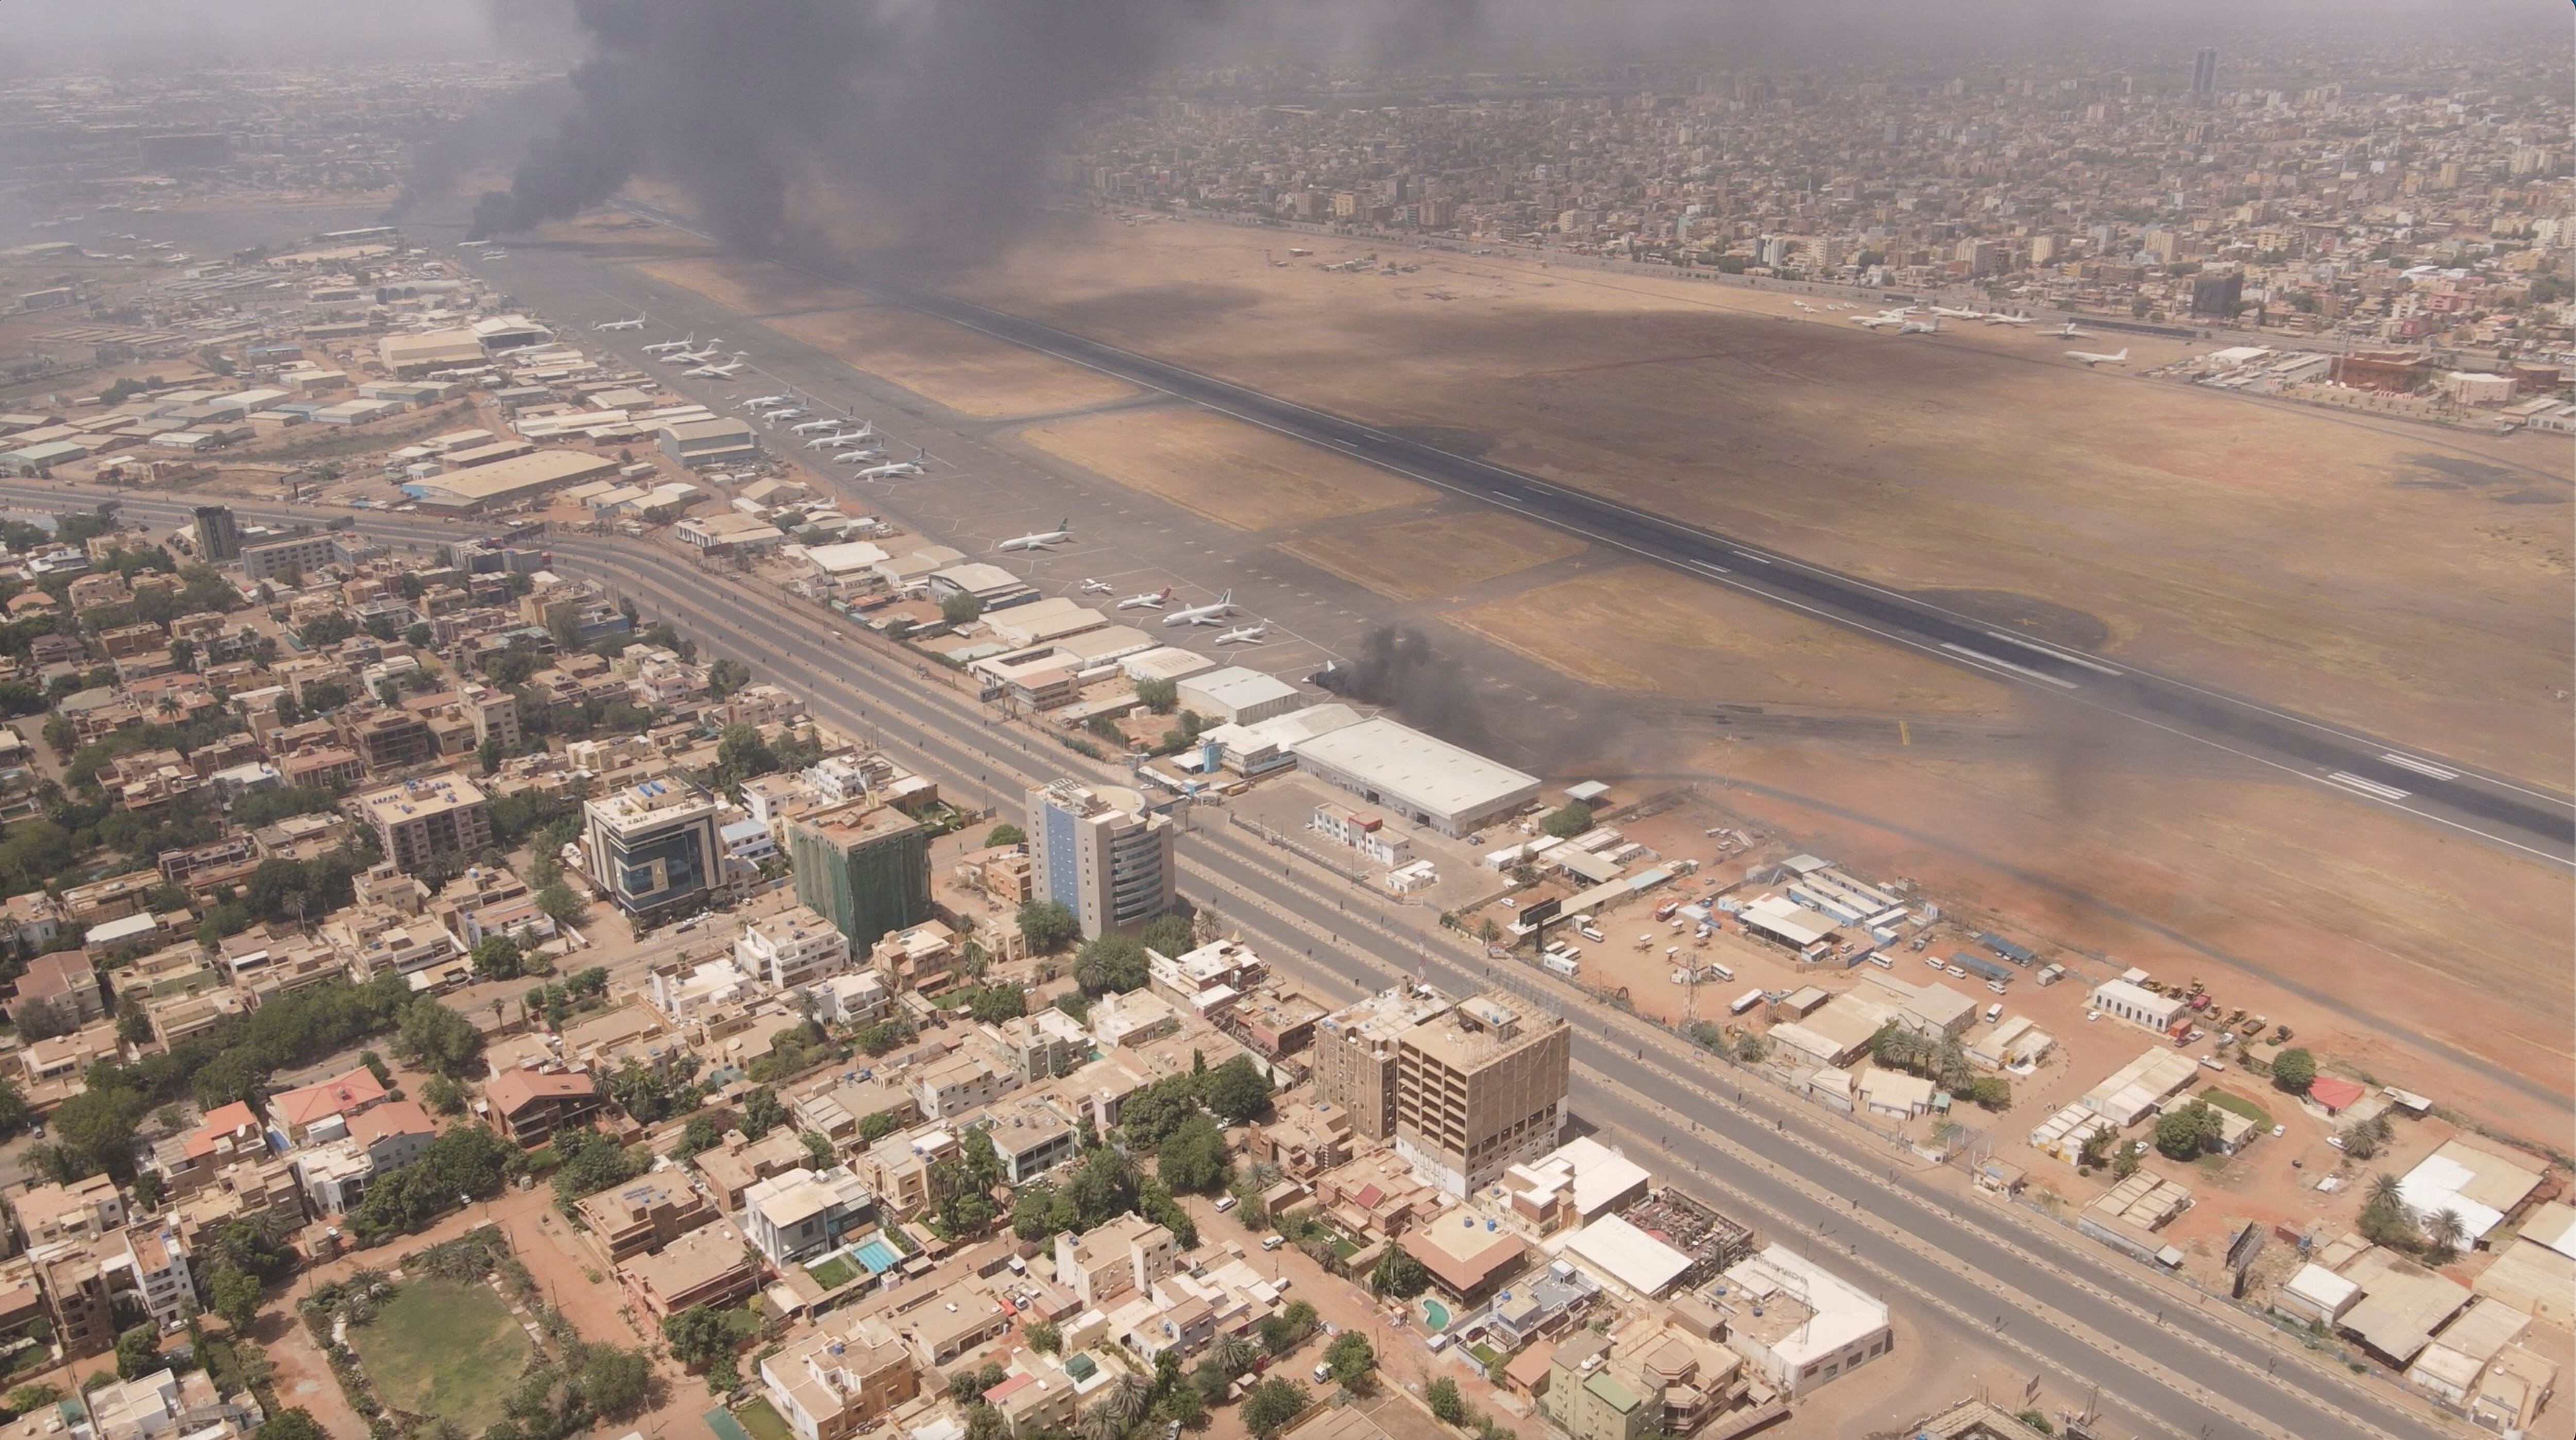 El humo se eleva sobre la ciudad mientras el ejército y los paramilitares se enfrentan en una lucha por el poder, en Jartum, Sudán, el 15 de abril de 2023 en esta imagen obtenida de las redes sociales. Instagram @lostshmi/via REUTERS